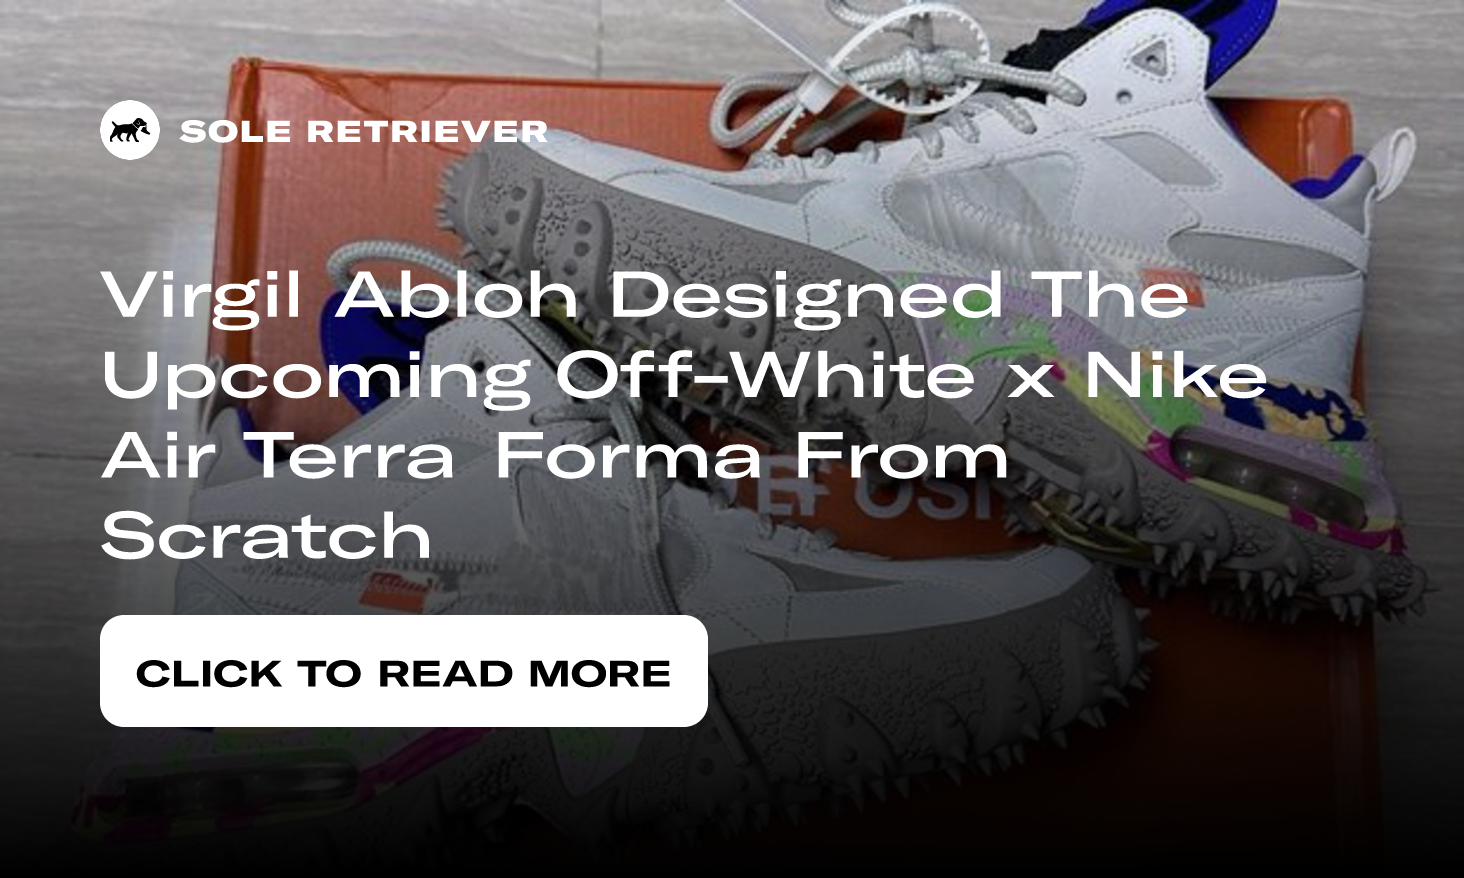 Nike Air Terra Forma - A Virgil Abloh Off-White Original!